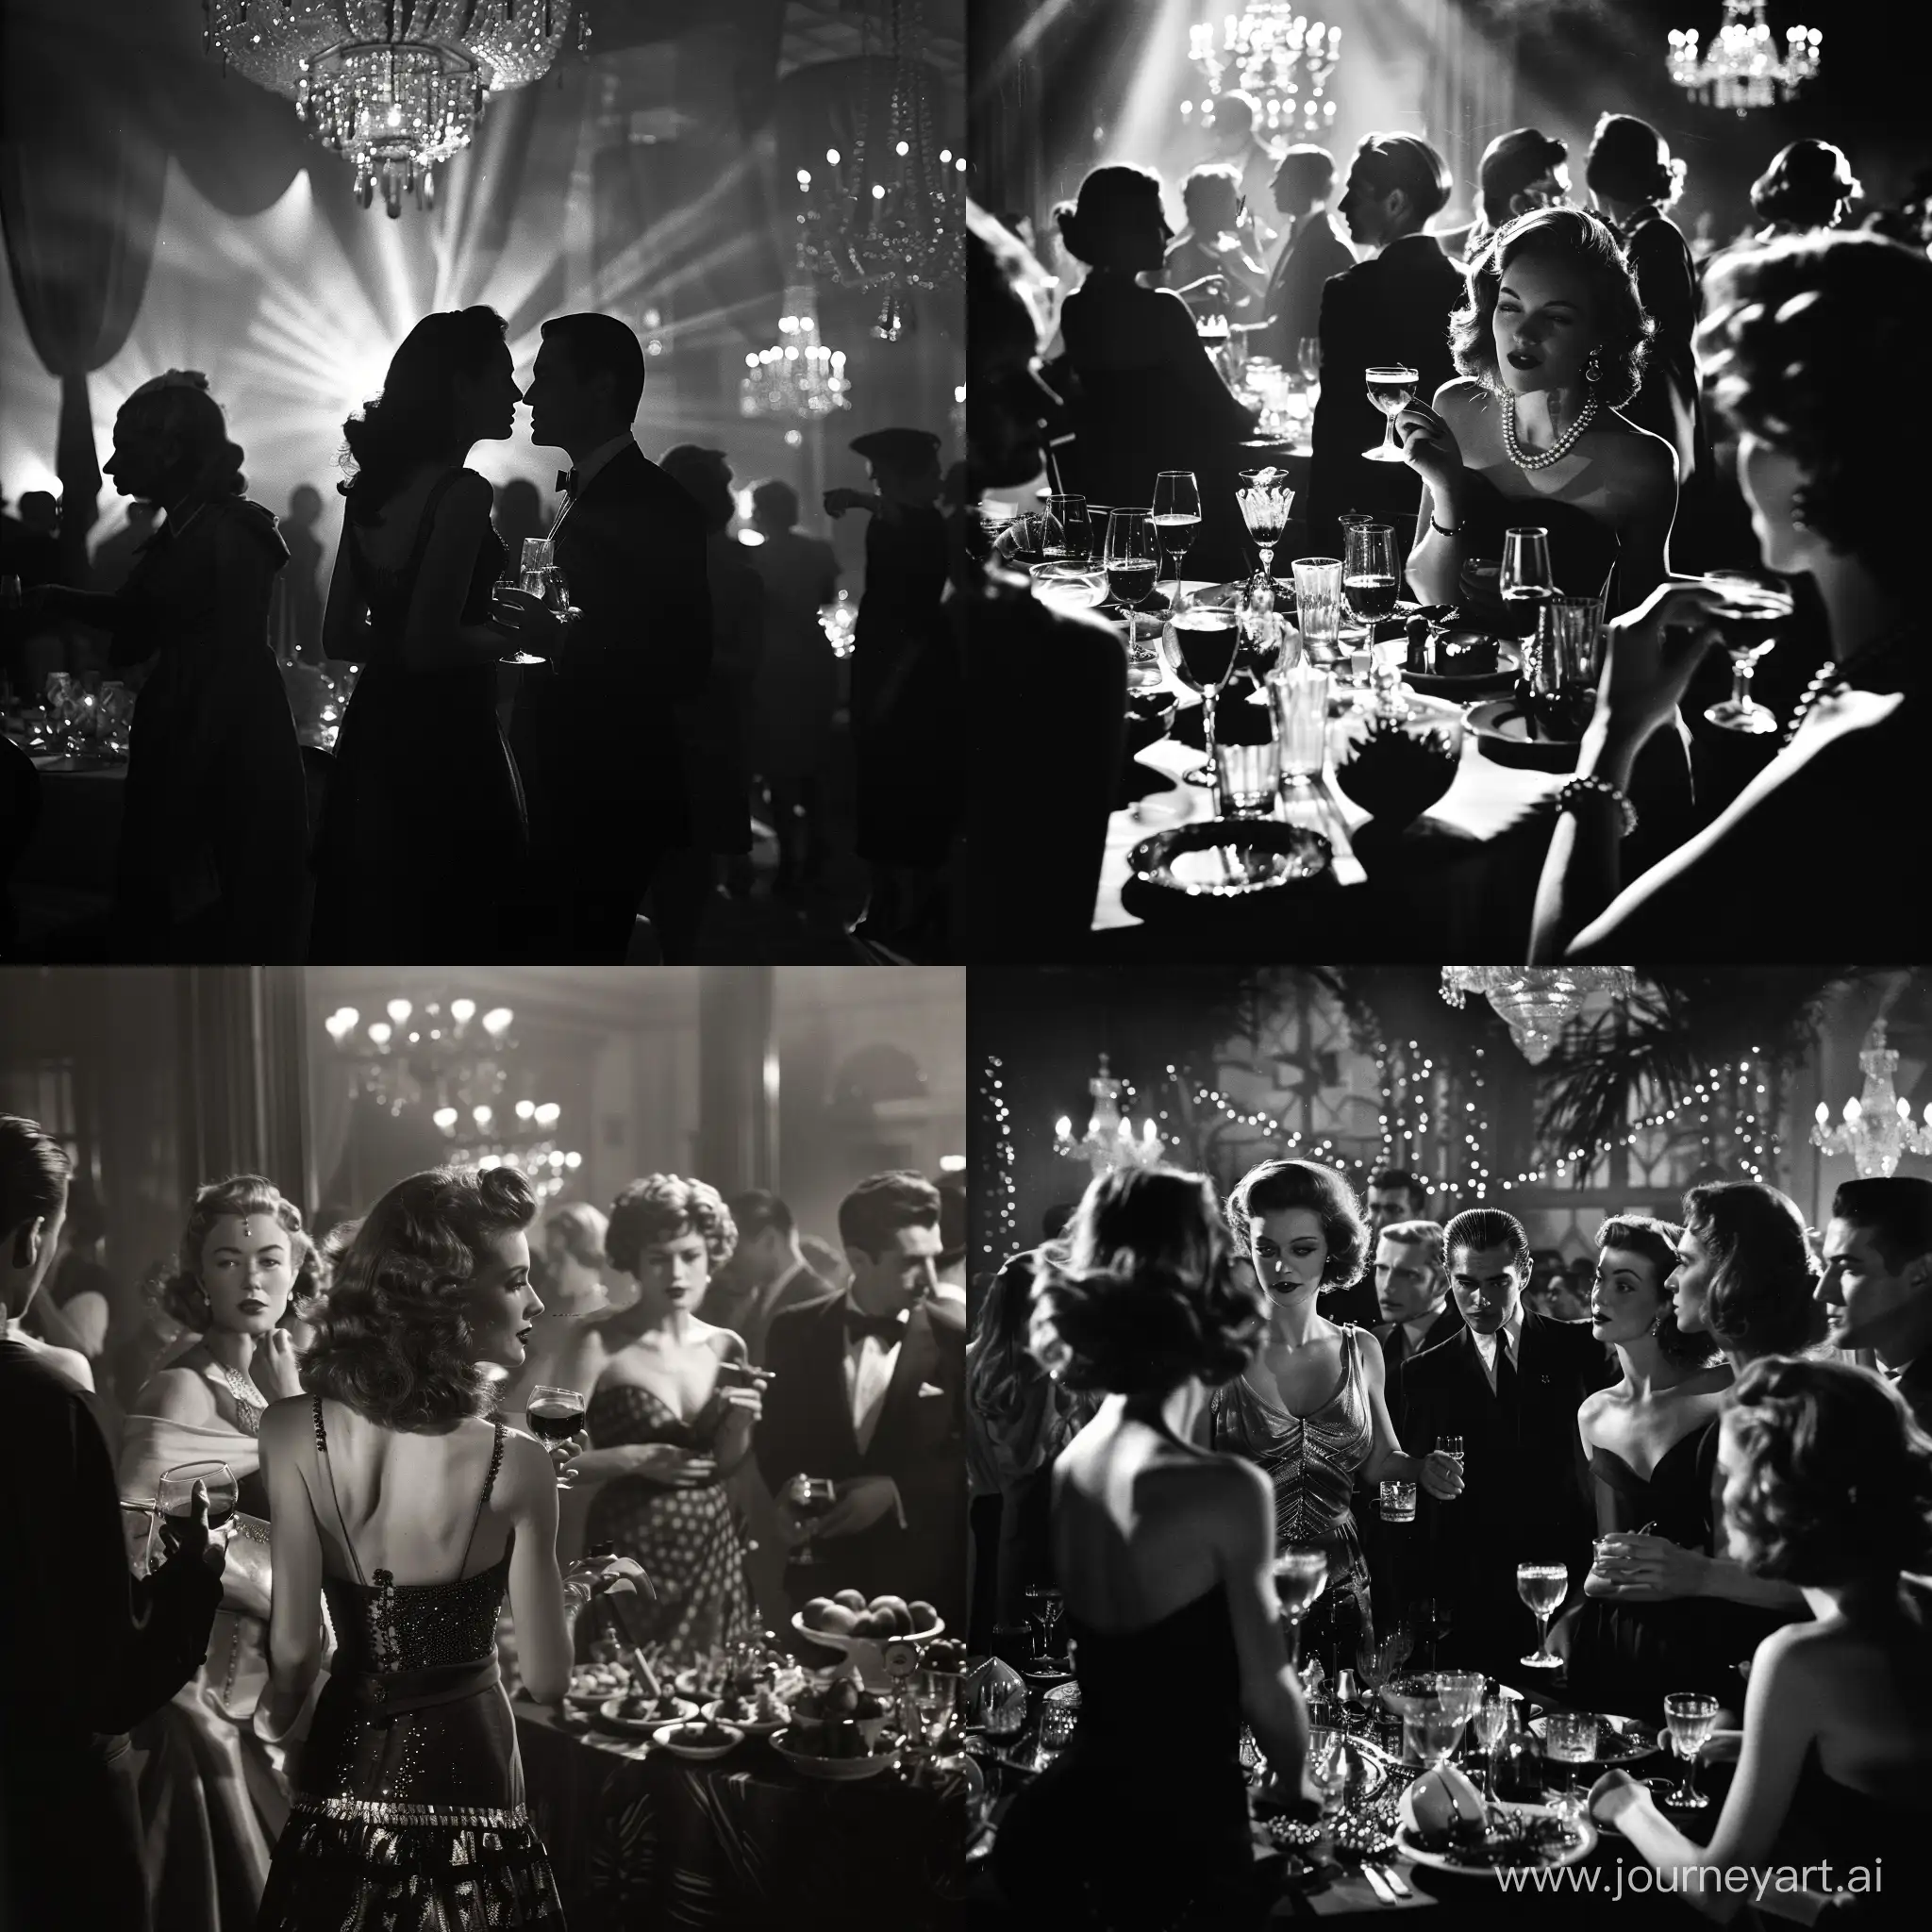 1940s-HighClass-Party-Scene-in-Noir-Style